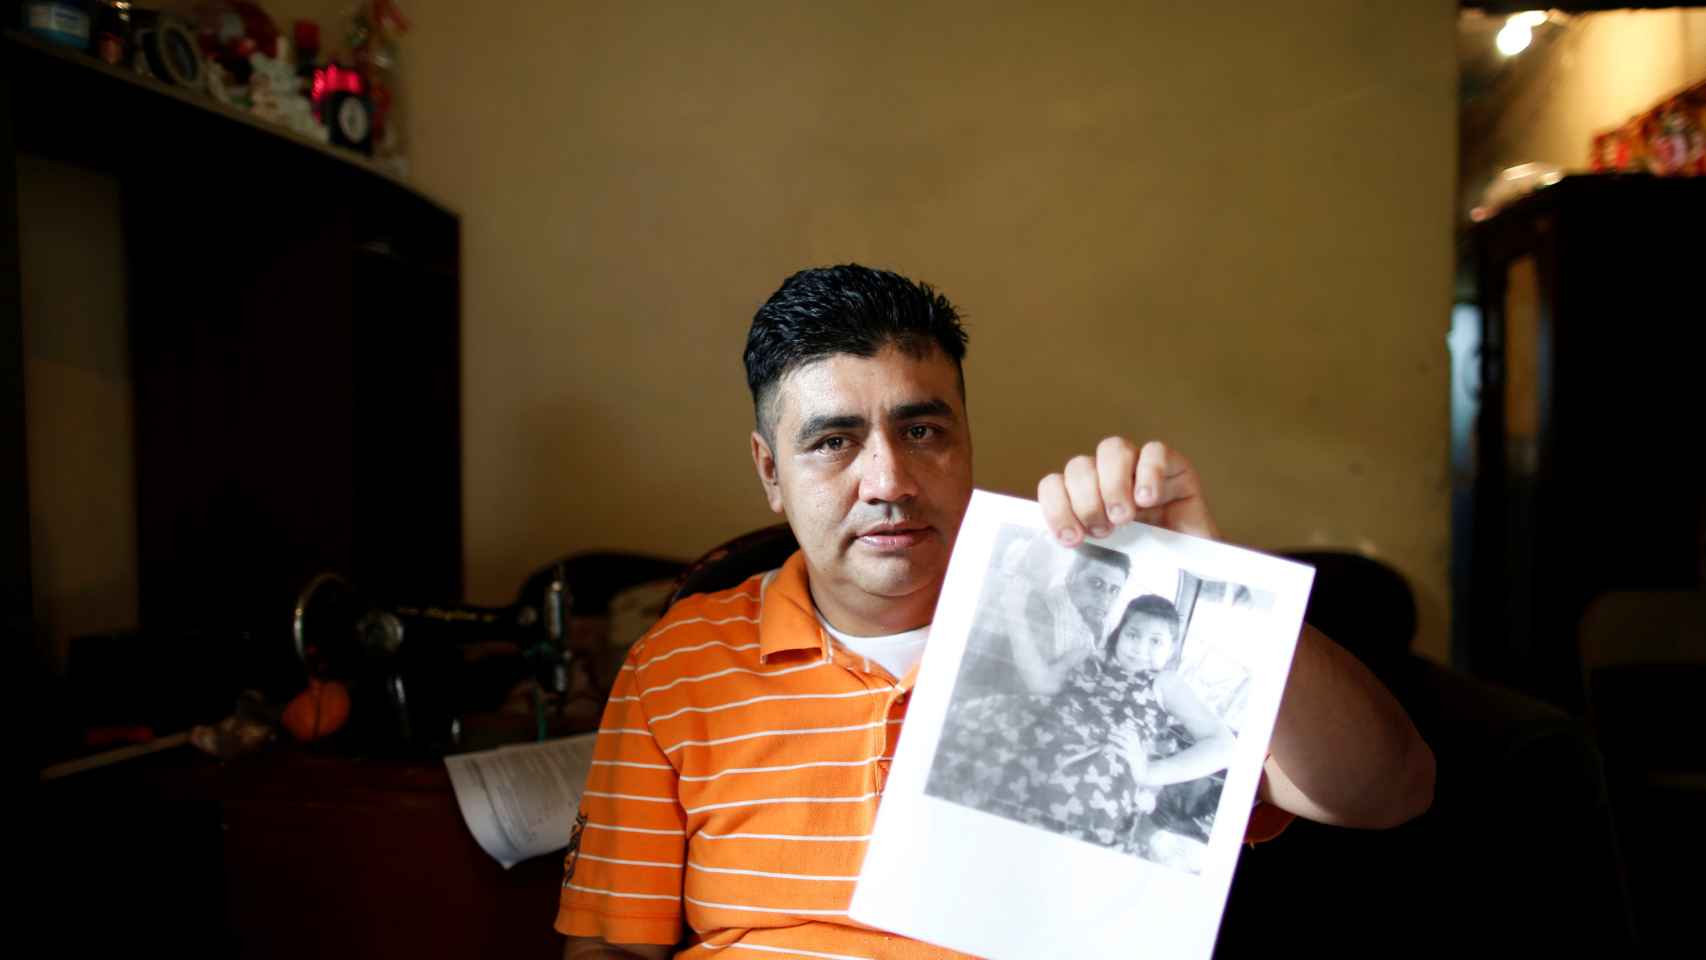 Melvin García, uno de los inmigrantes que ha sido separado de su hijo.